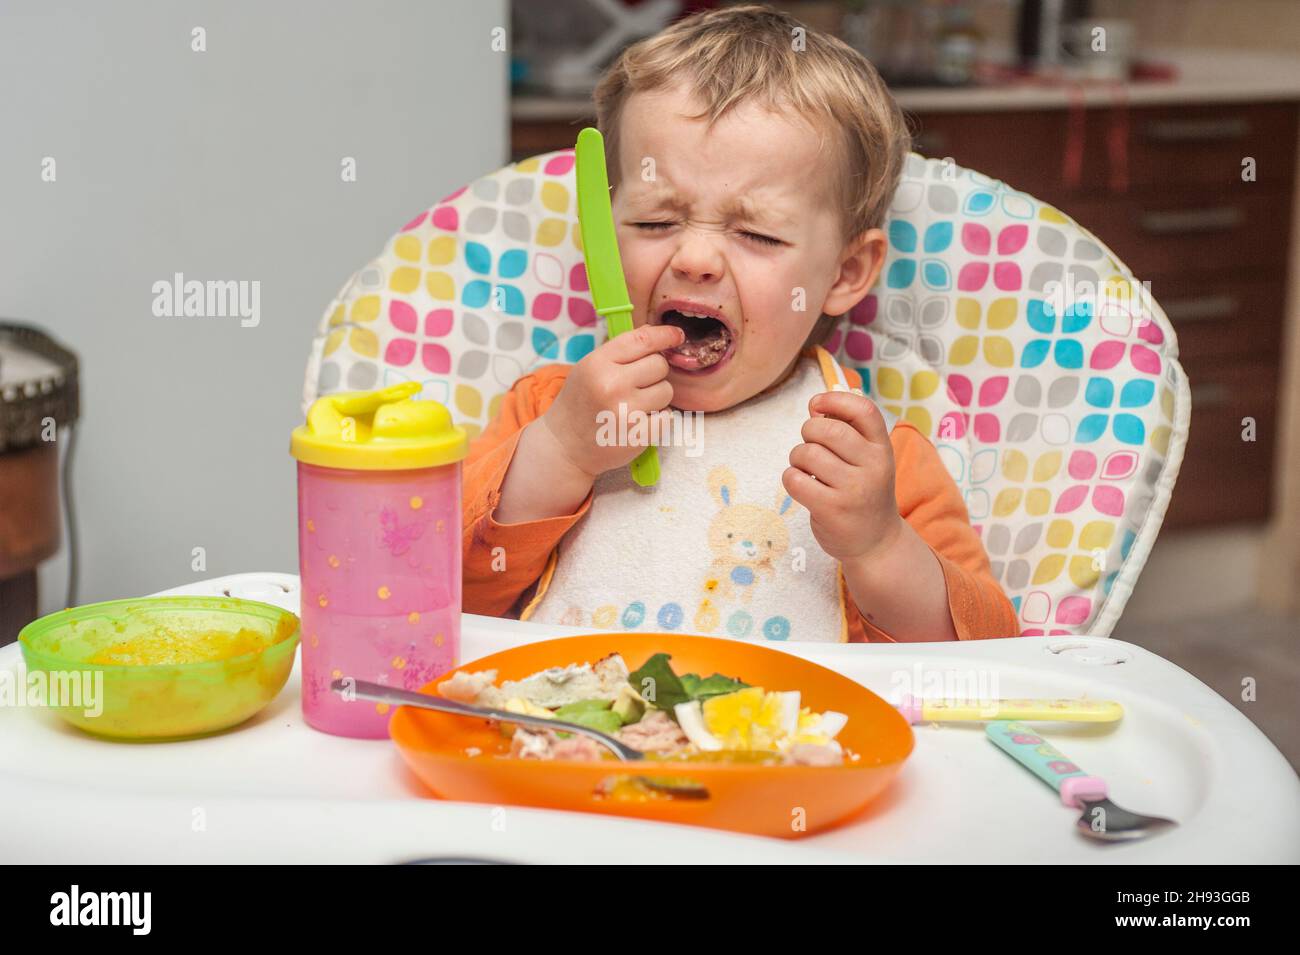 Une jeune fille de 2 ans grimace et pleure alors qu'elle mange un repas sur une chaise haute. Banque D'Images